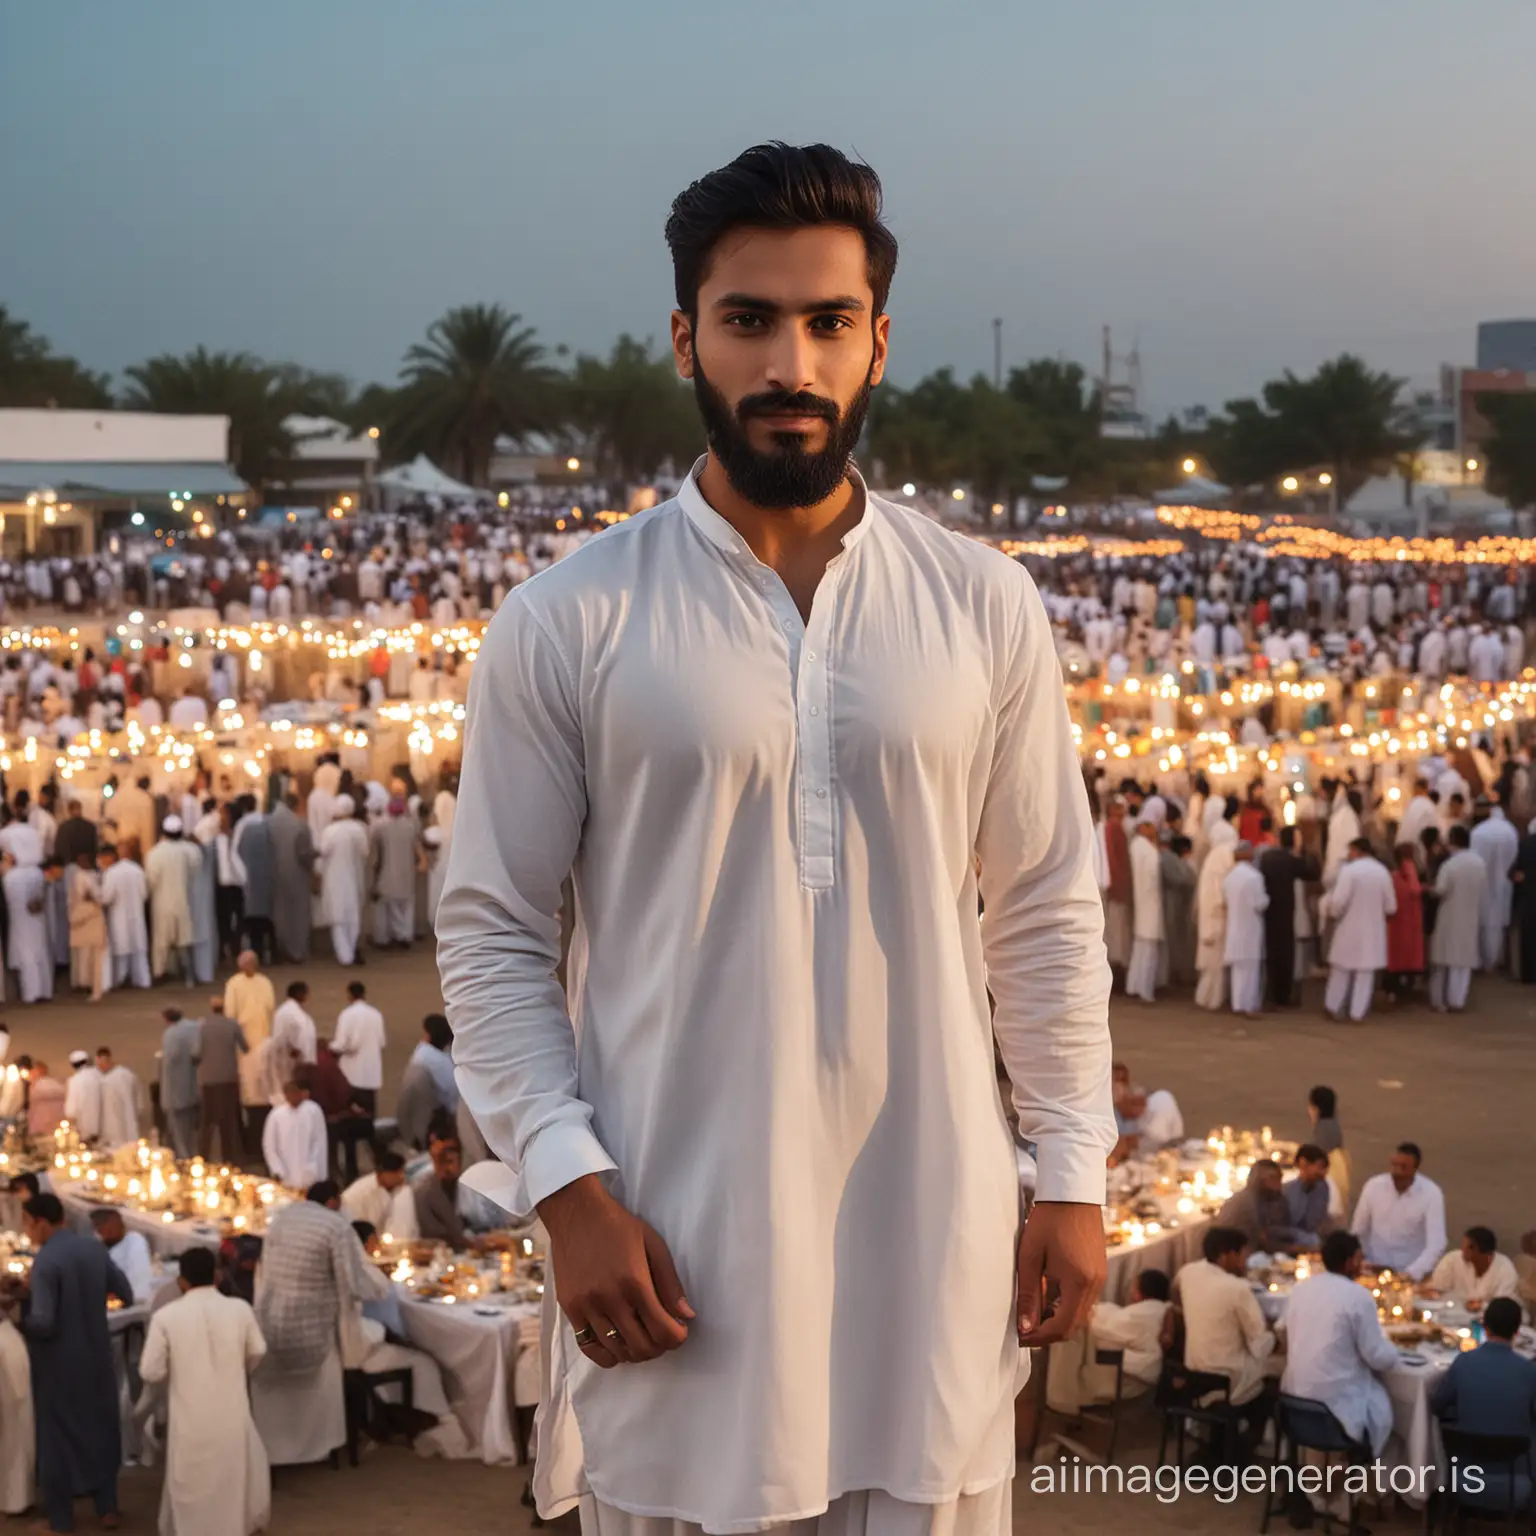 Pakistani-Youth-Celebrating-Iftar-with-Community